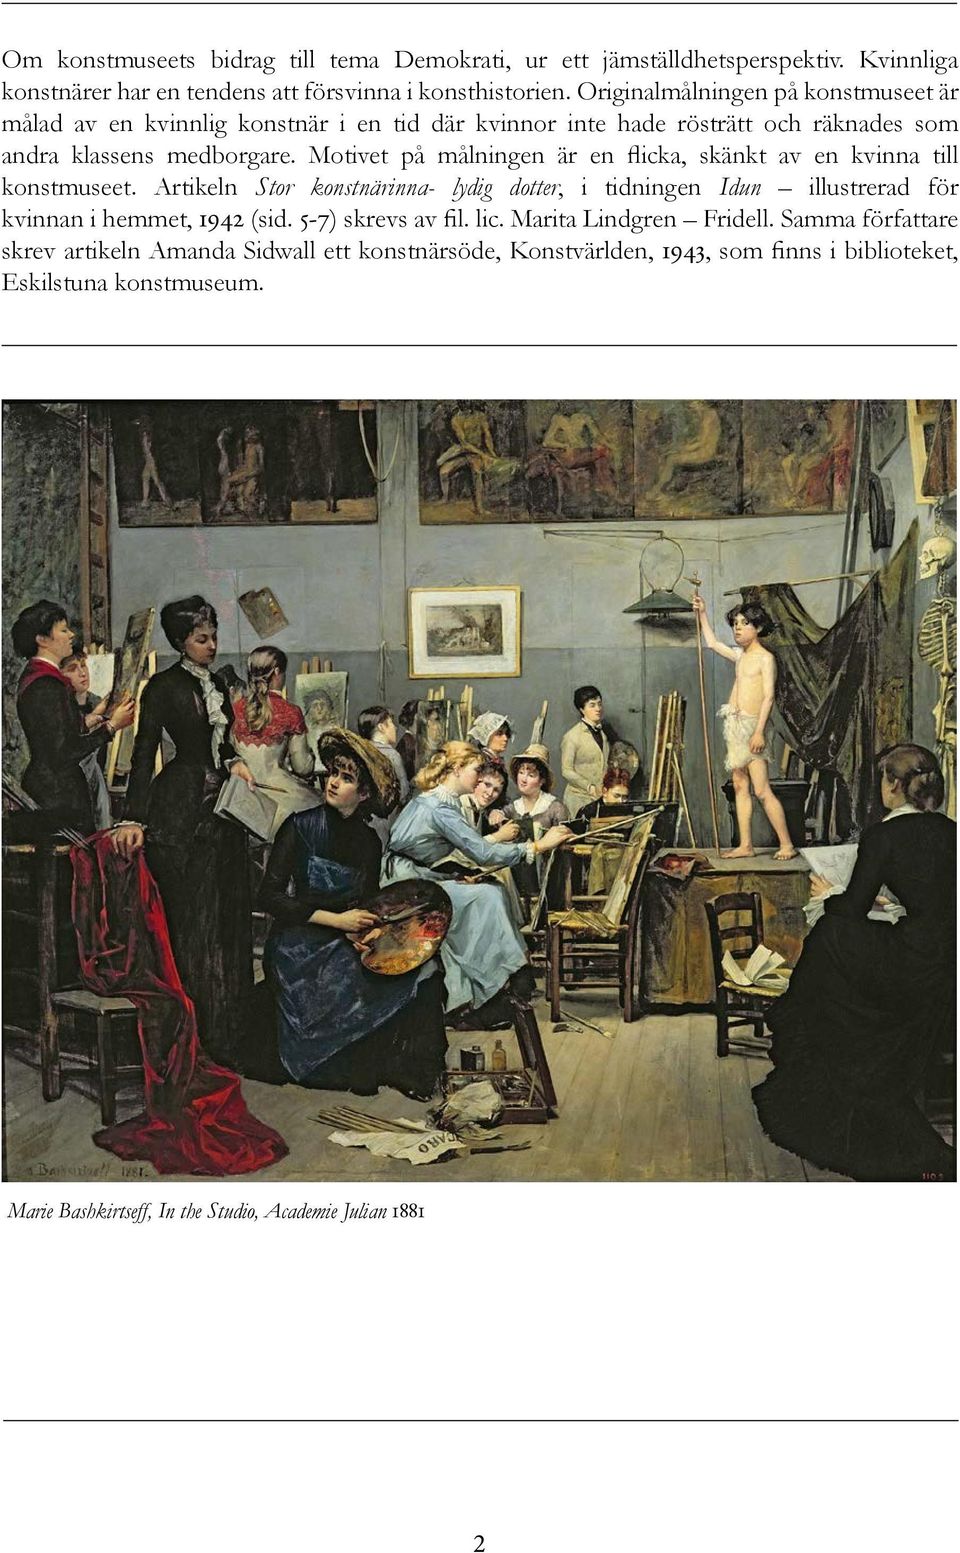 Motivet på målningen är en flicka, skänkt av en kvinna till konstmuseet. Artikeln Stor konstnärinna- lydig dotter, i tidningen Idun illustrerad för kvinnan i hemmet, 1942 (sid.